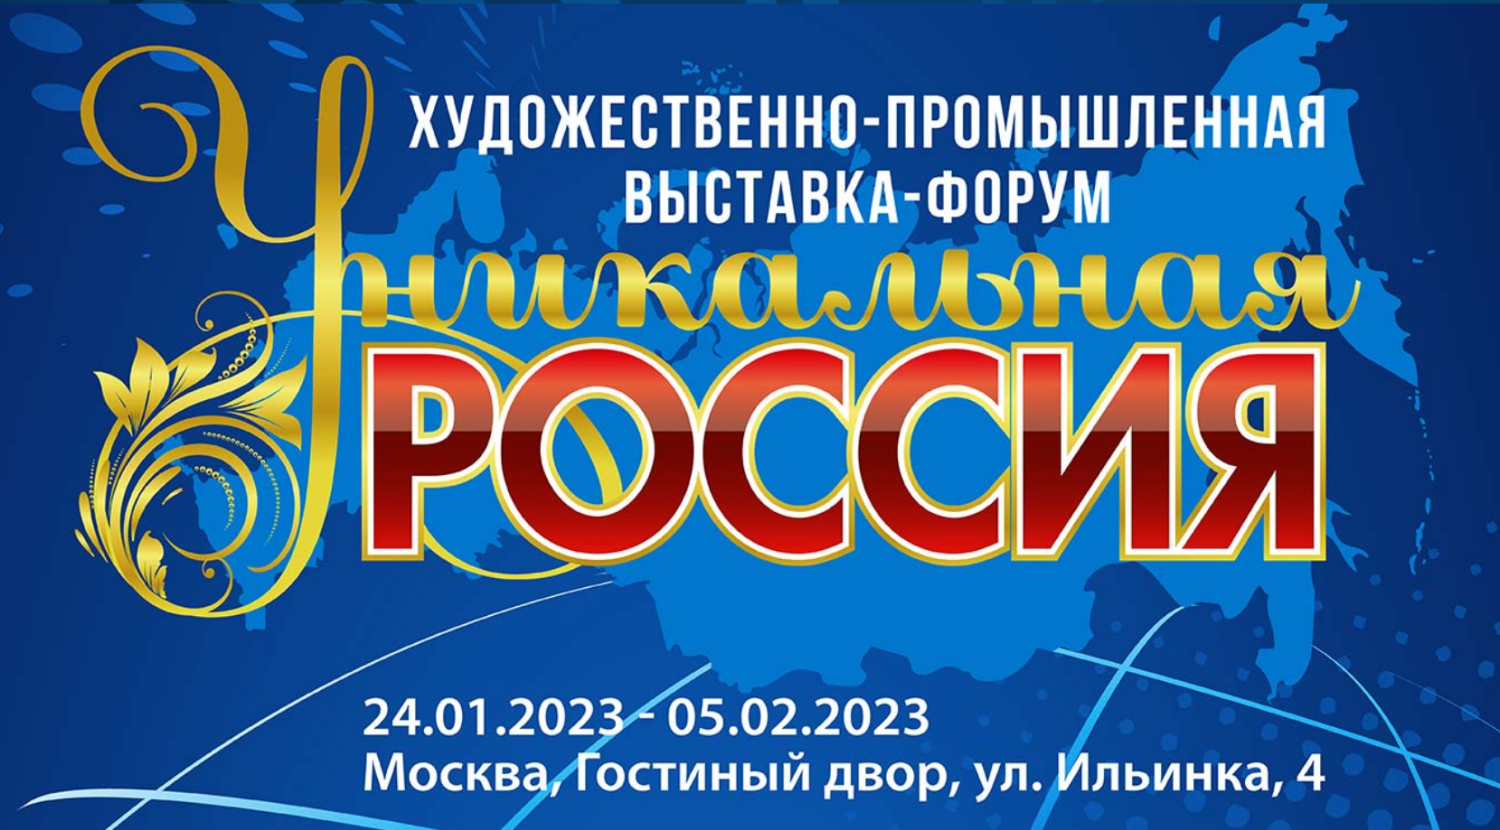 Пензенские предприятия приглашаются на 3-ю Художественно-промышленную выставку-форум «Уникальная Россия»